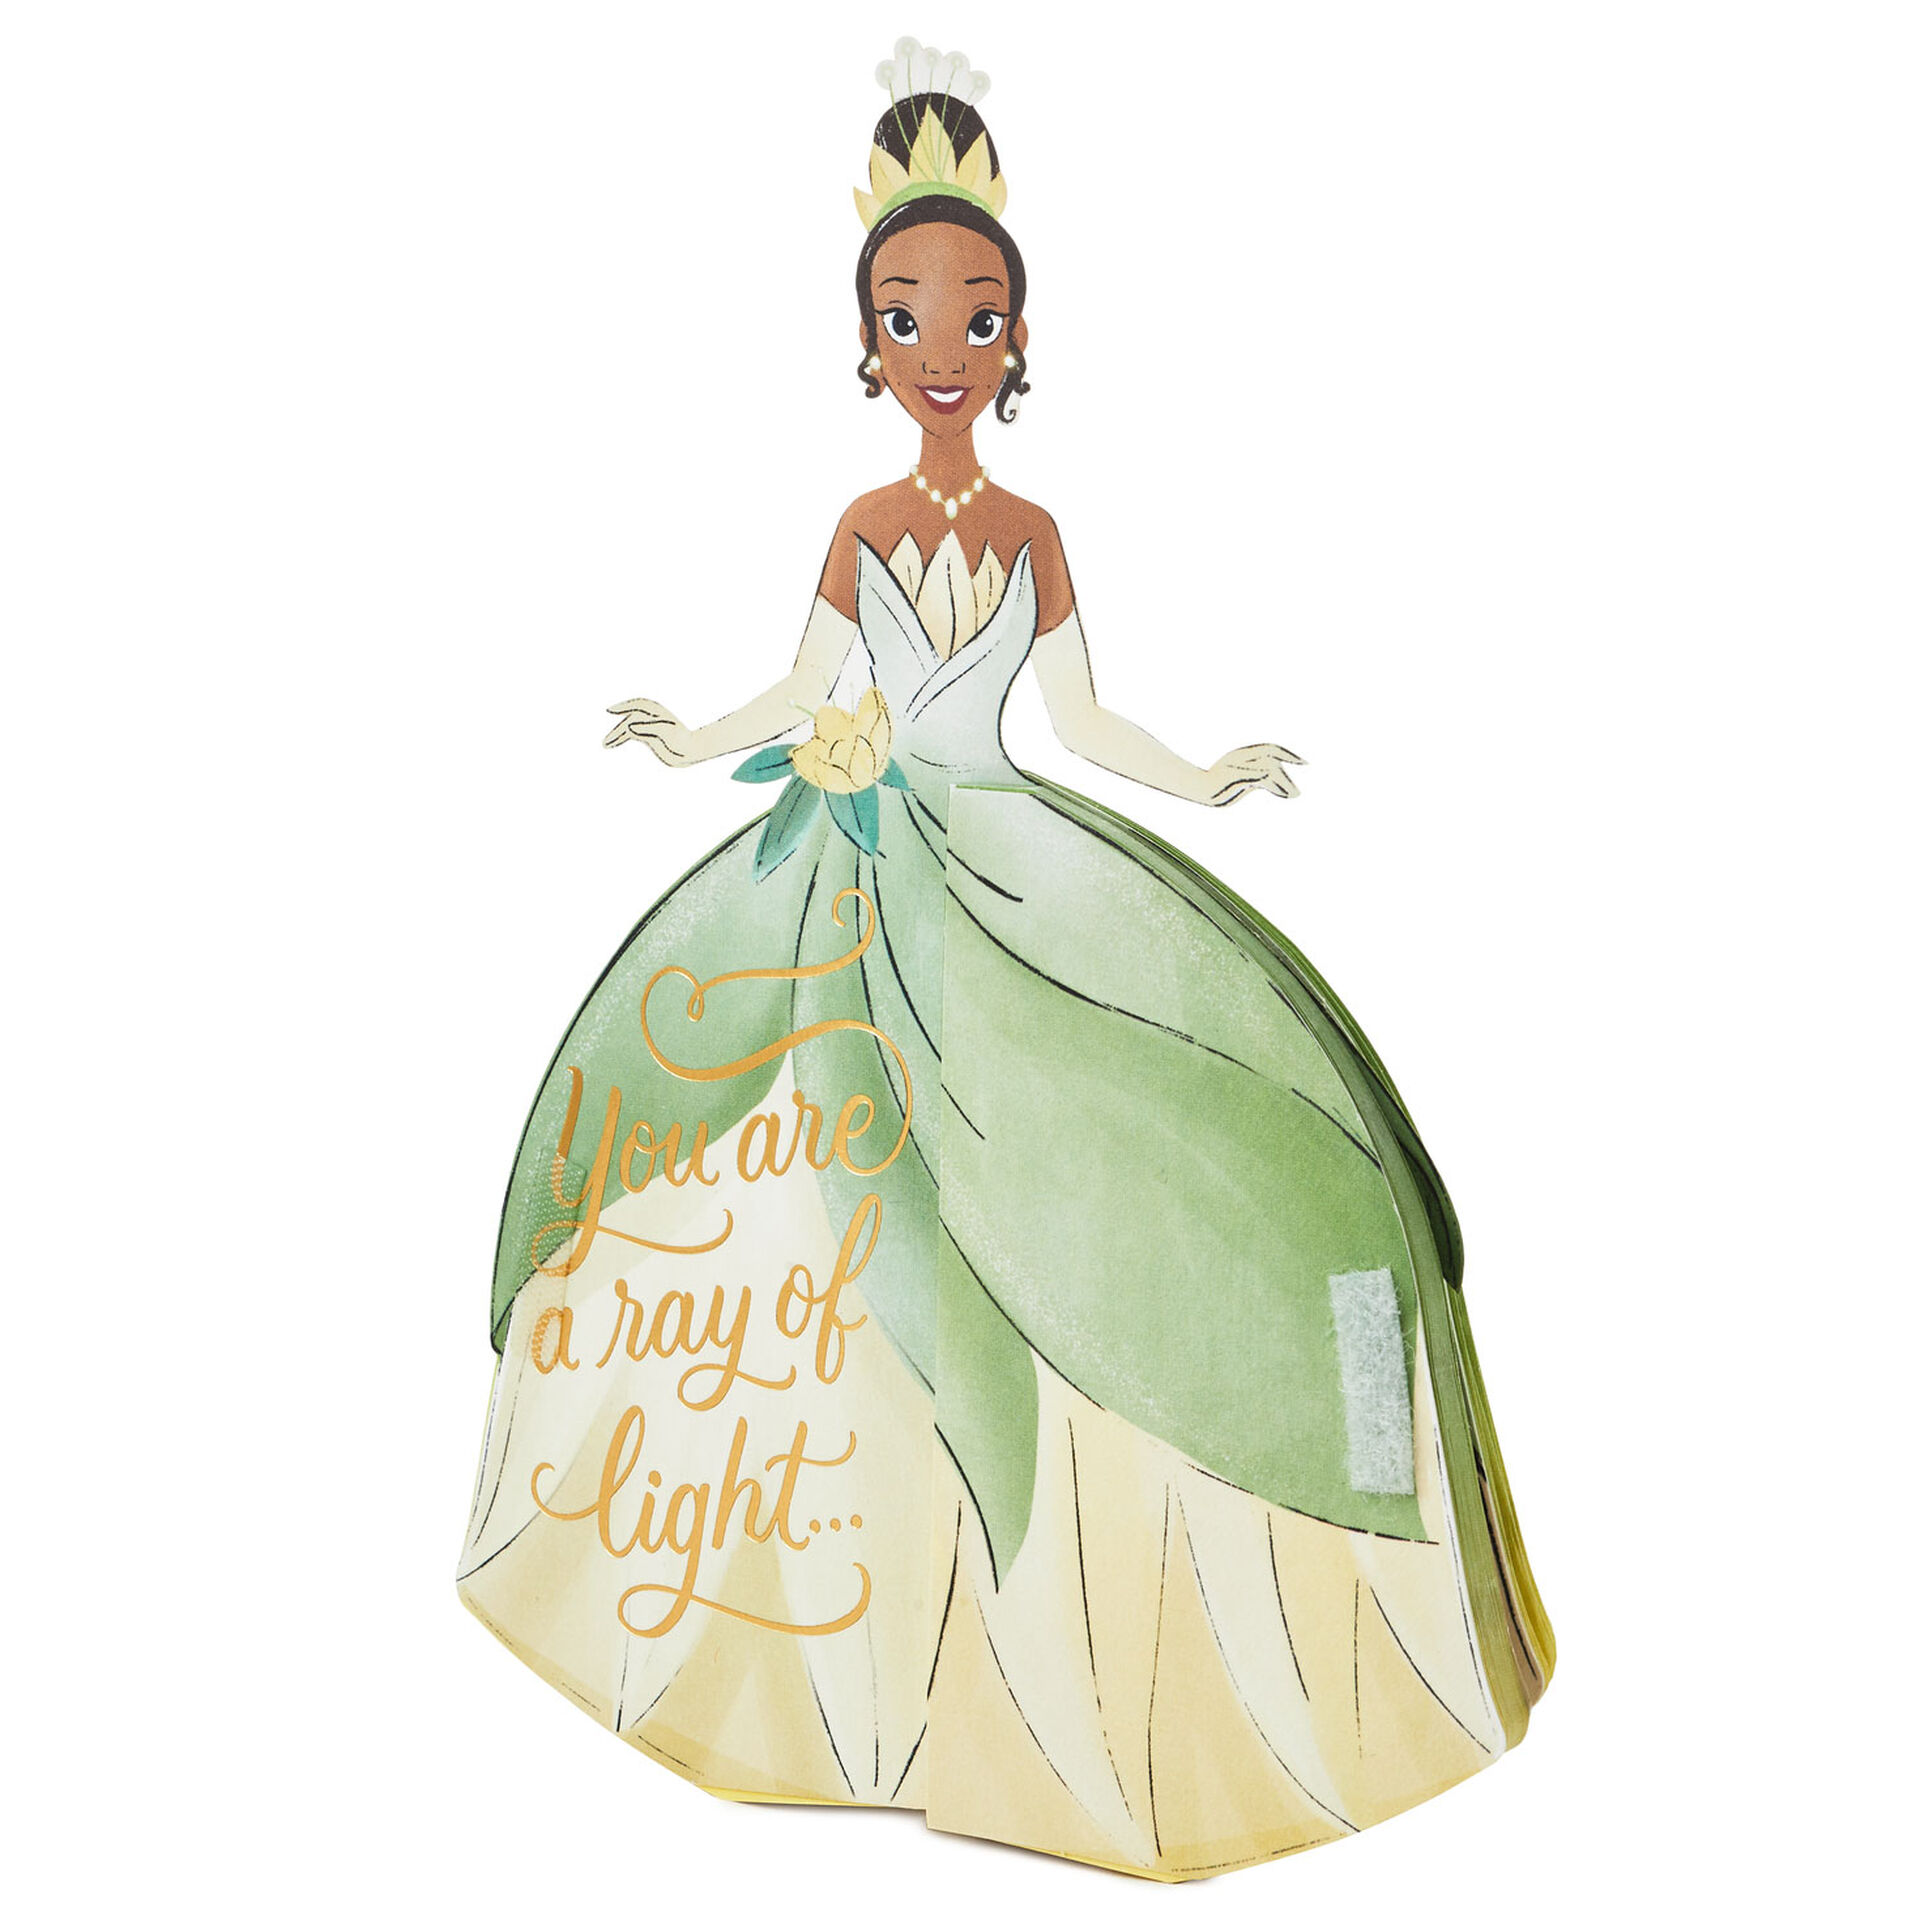 Disney-Princess-Tiana-Honeycomb-Dress-3D-PopUp-Card_699WDR1203_02